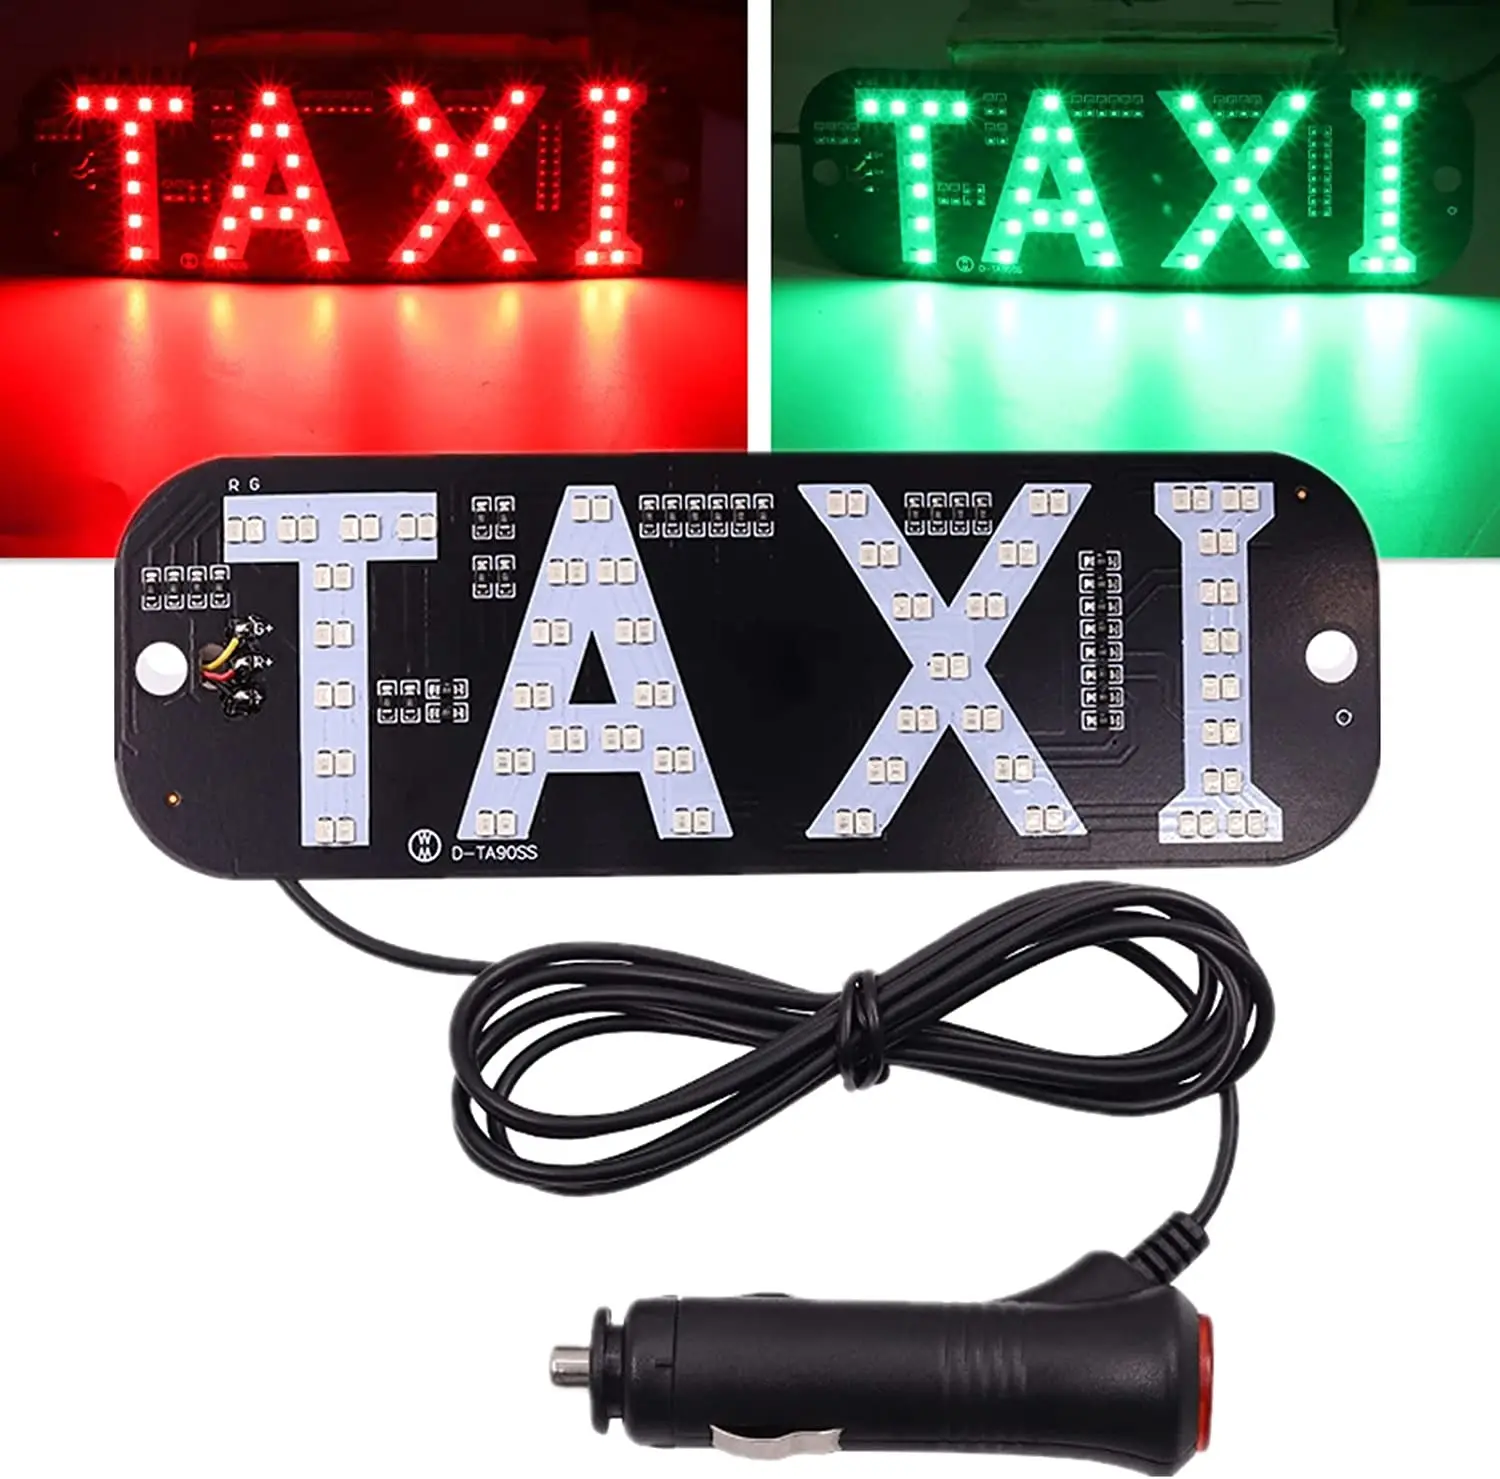 Đôi màu taxi ánh sáng LED xe kính chắn gió Cab chỉ số đèn taxi mái dấu hiệu USB kính chắn gió taxi ánh sáng